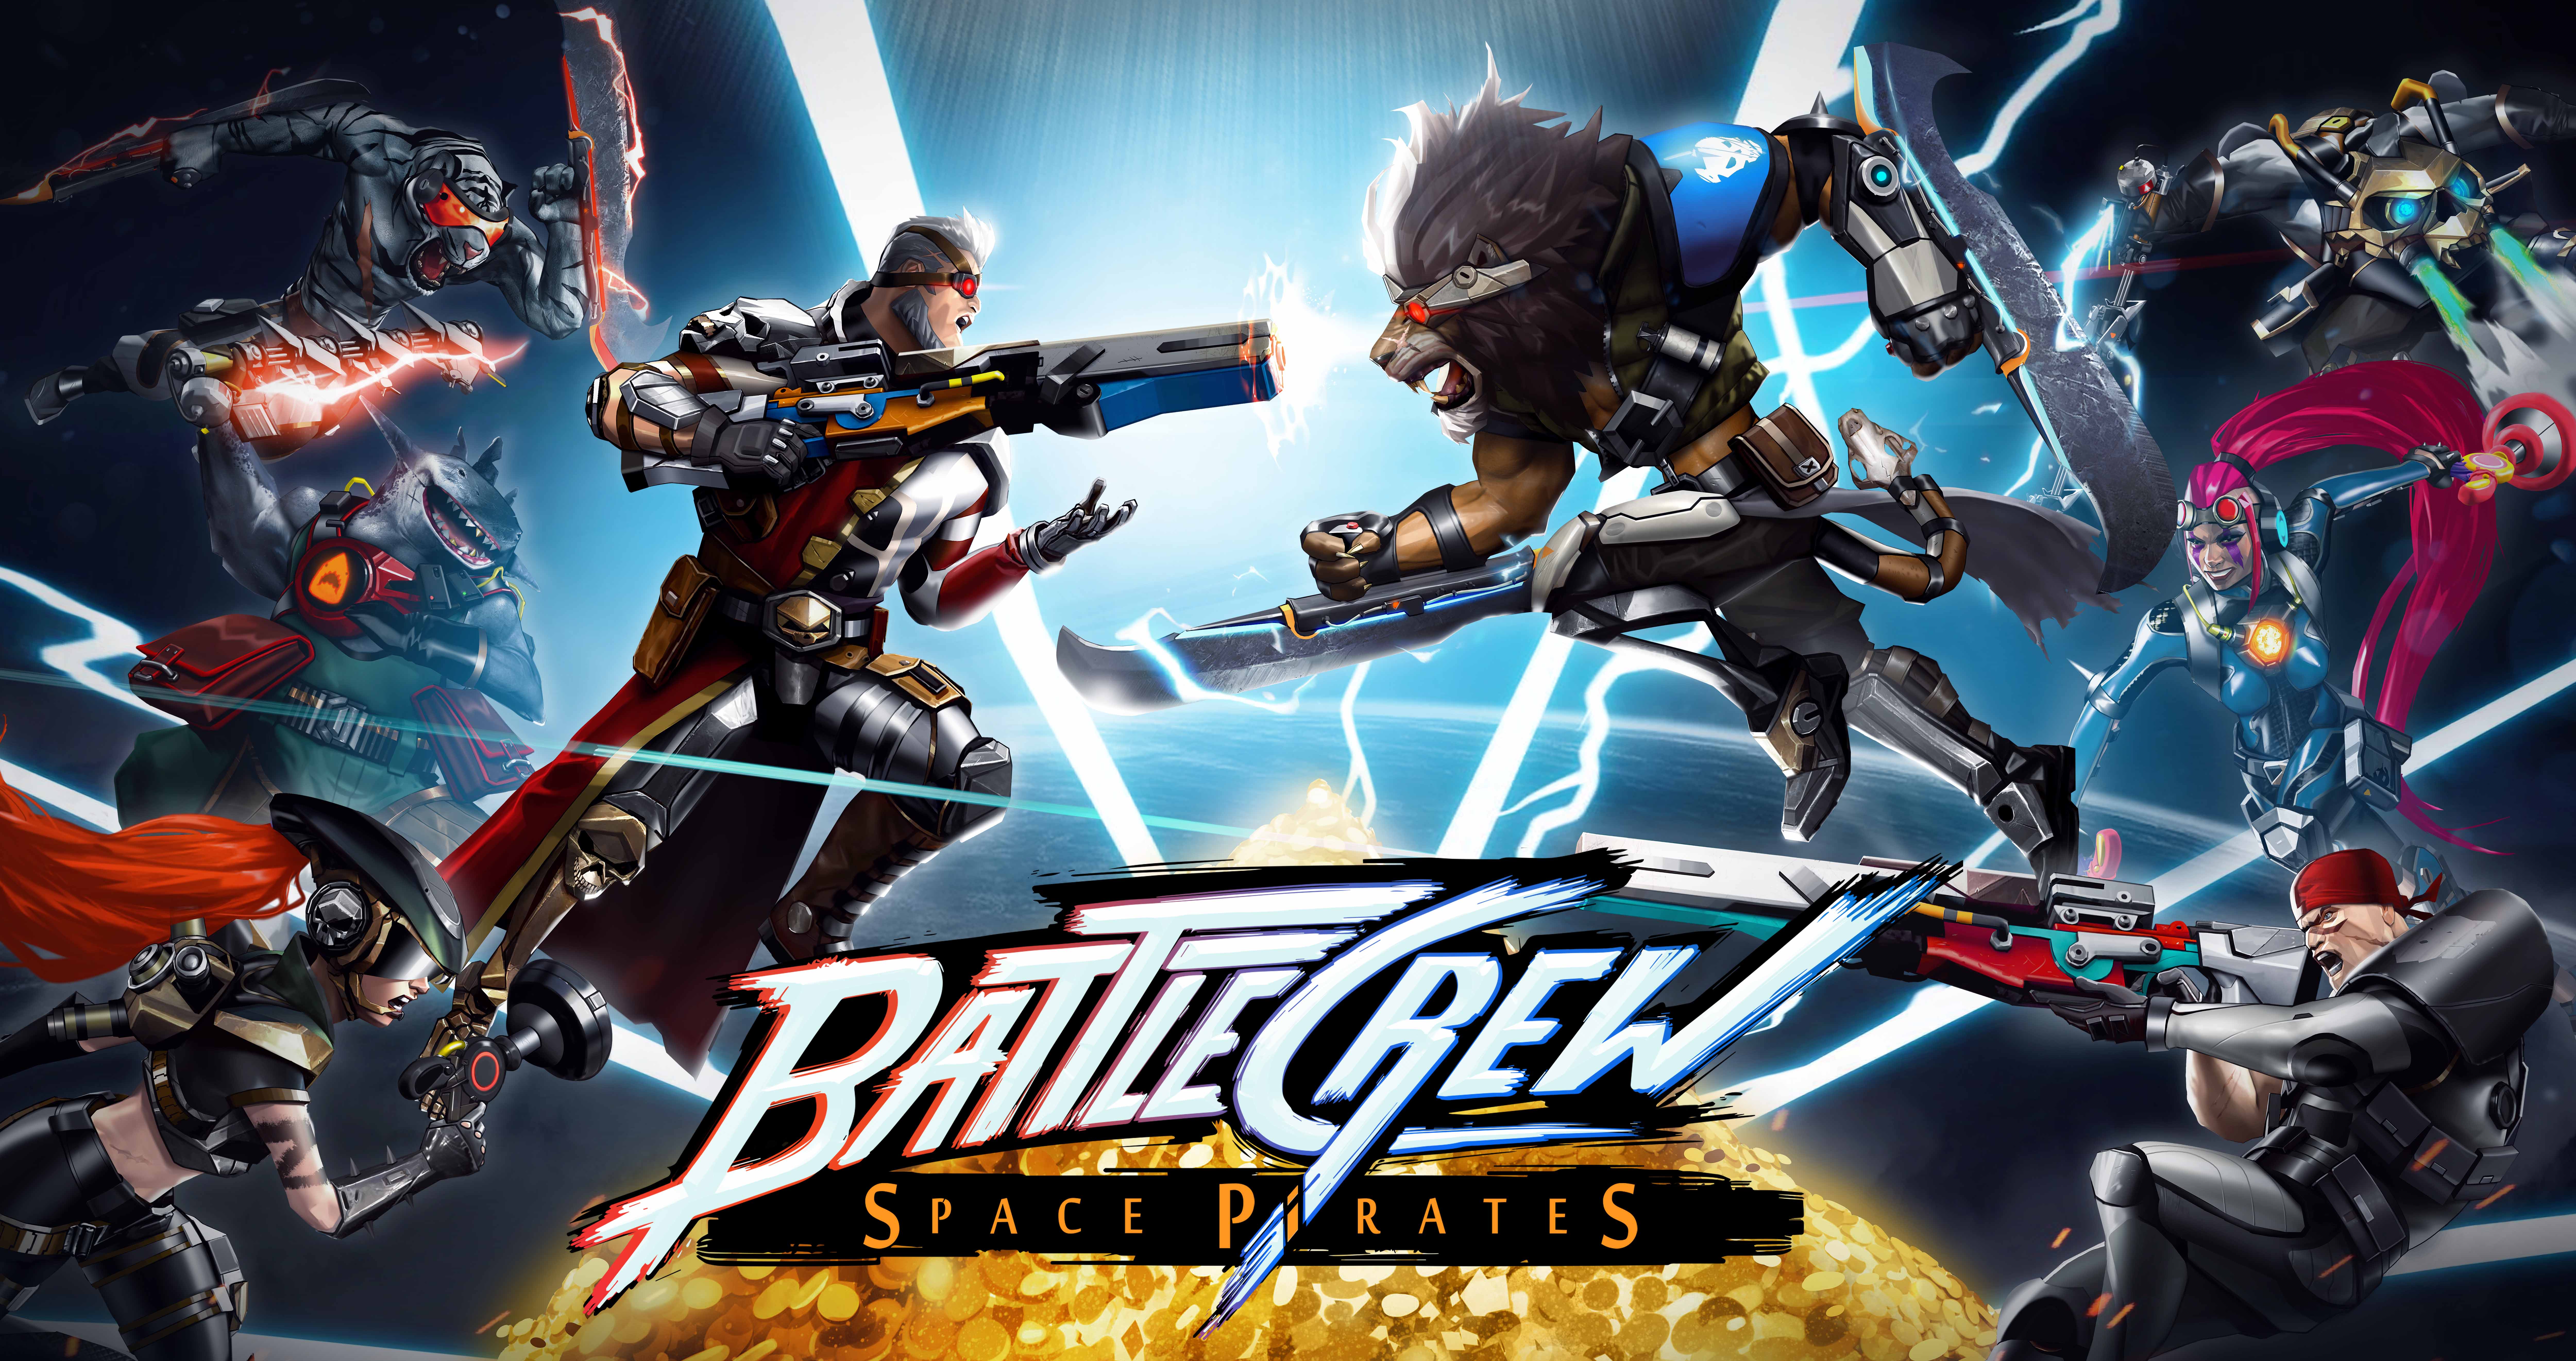 Battlecrew: Space Pirates